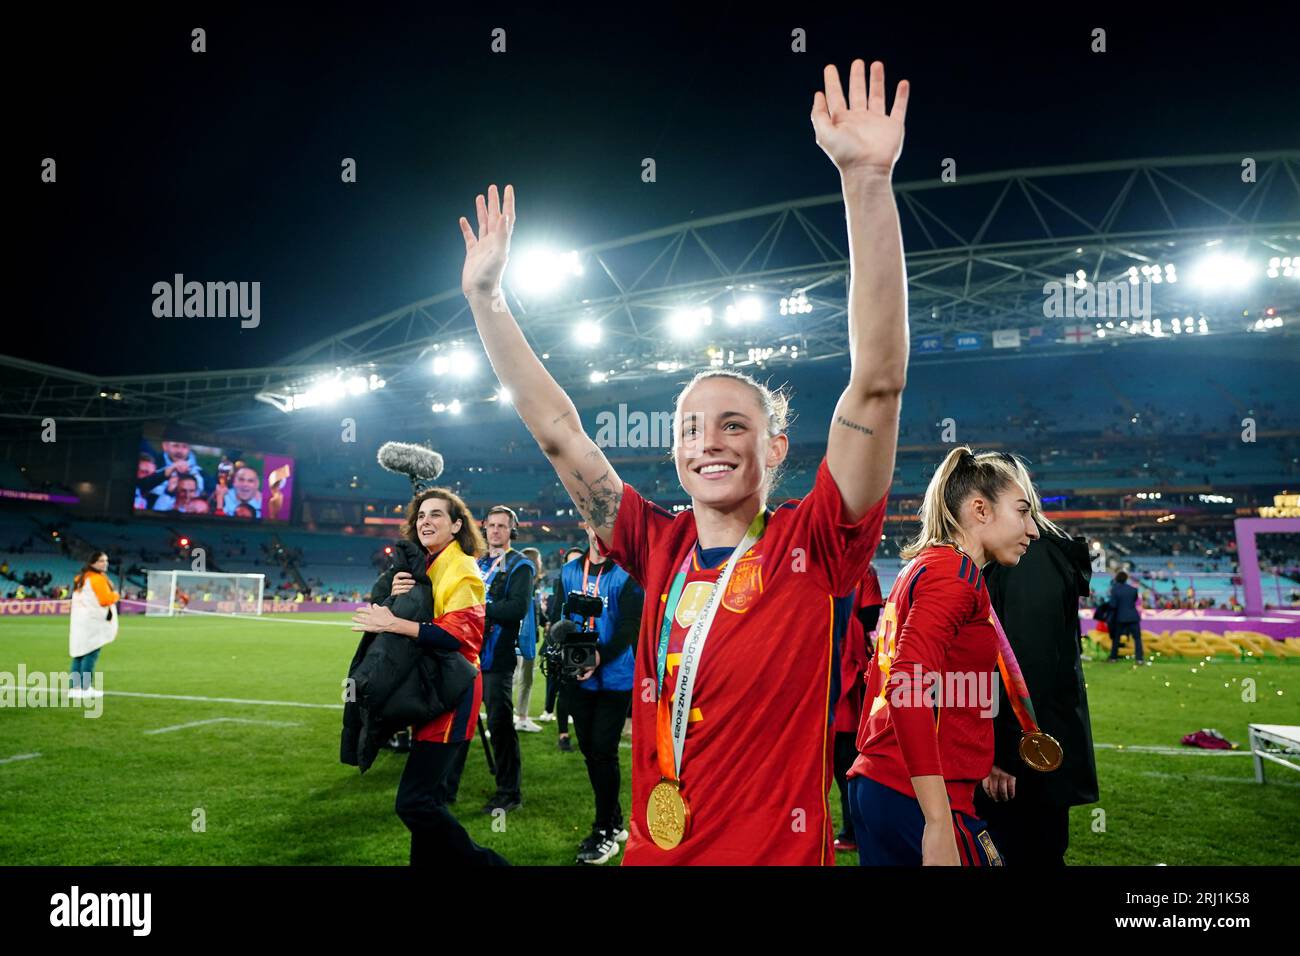 Die Spanierin Ona Batlle feiert nach dem Endspiel der FIFA Frauen-Weltmeisterschaft im Stadion Australien, Sydney. Bilddatum: Sonntag, 20. August 2023. Stockfoto